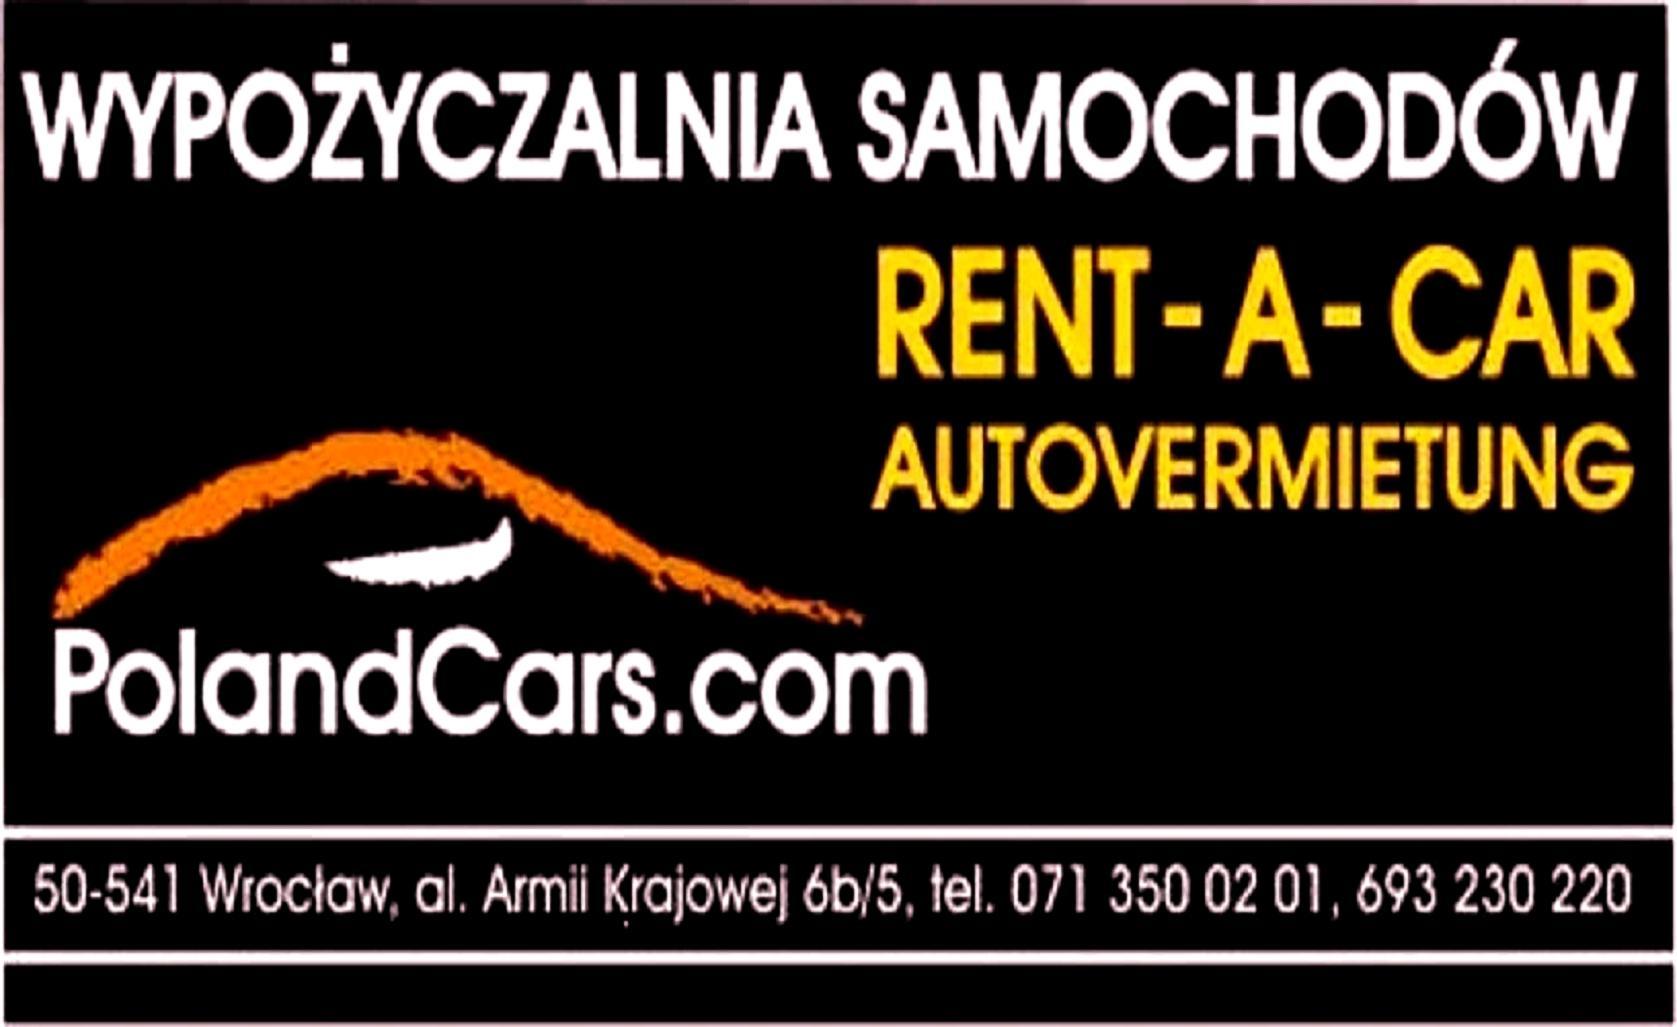    Wypożyczalnia samochodów PolandCars.com czyli nowa jakość! z siedzibą we Wrocławiu 